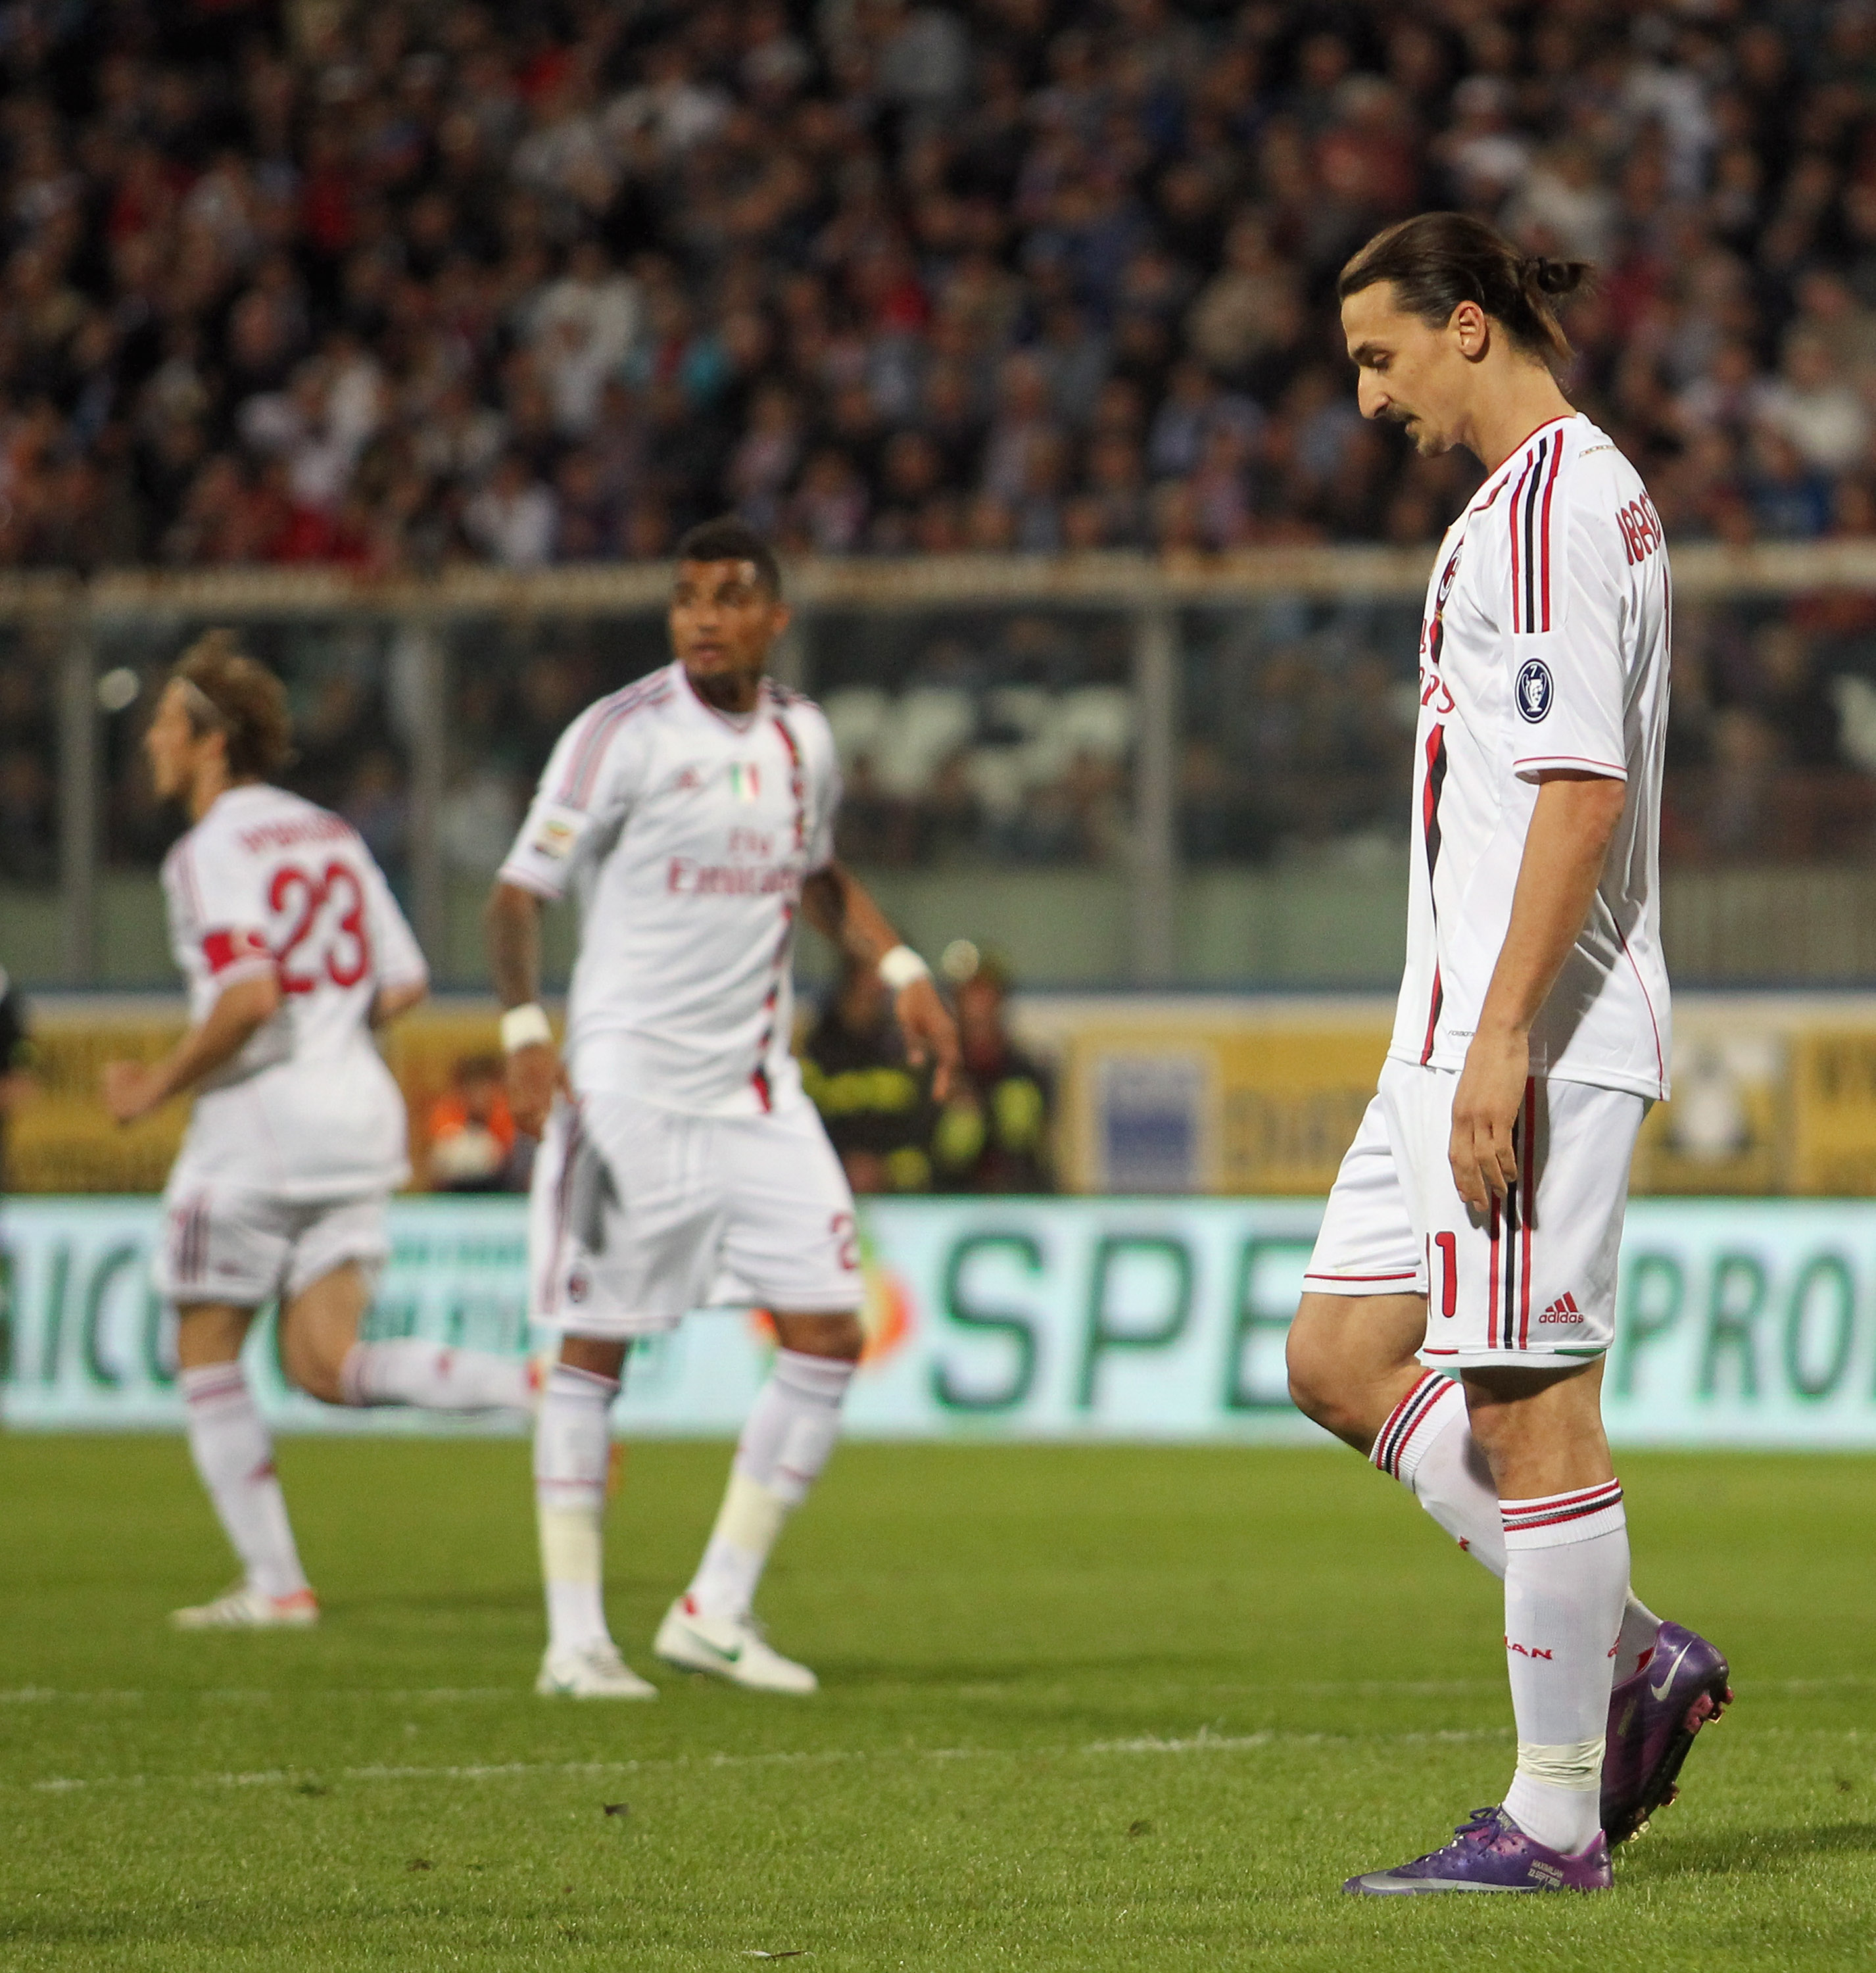 När Zlatan och hans Milan gästade Catania fanns det inte mycket att hurra för. Matchen slutade 1-1.